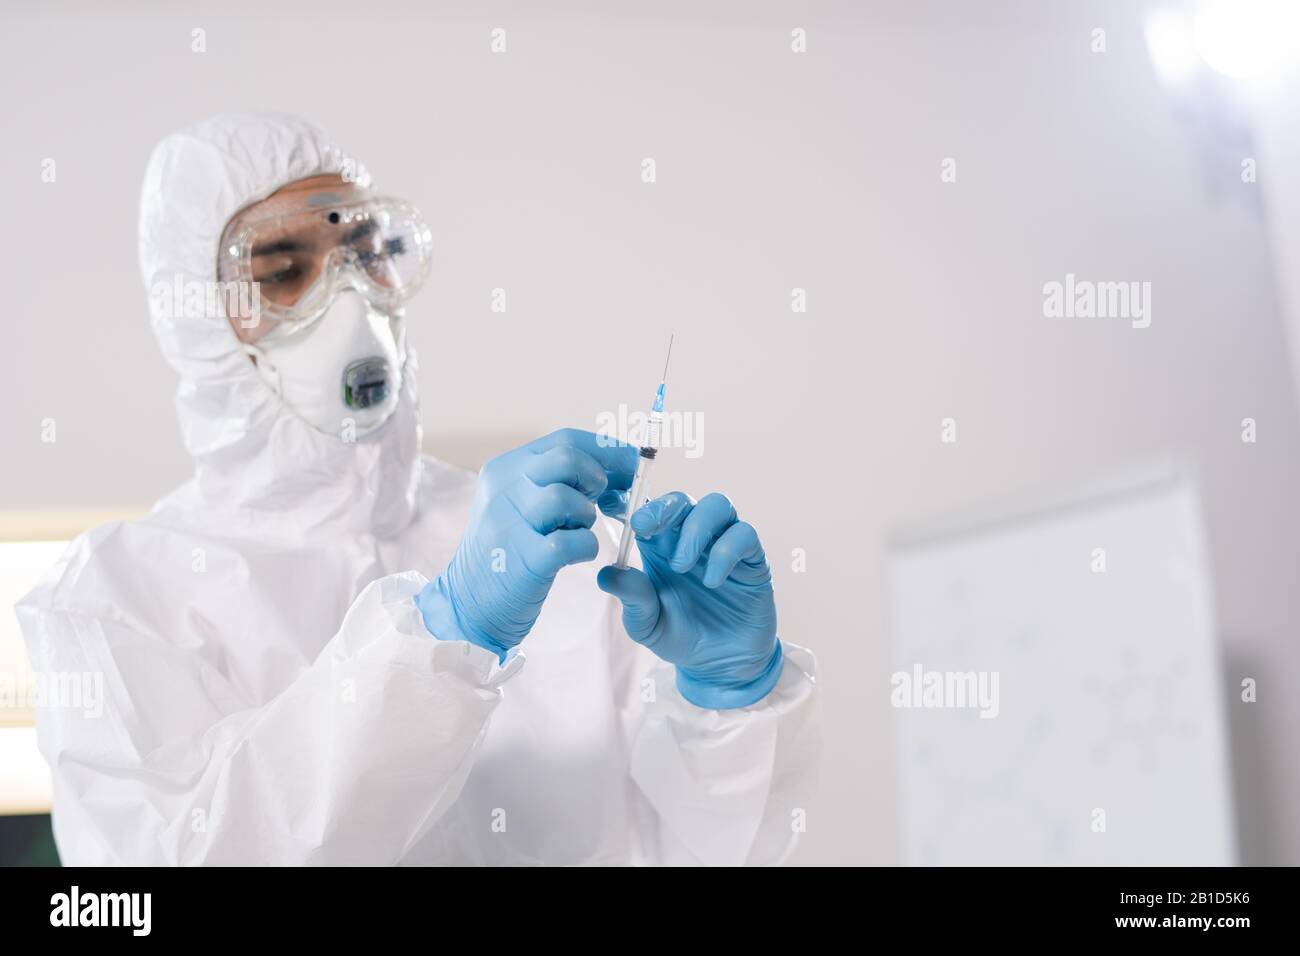 Spécialiste médical en combinaison de protection utilisant une seringue tout en vaccinant les personnes contre les virus dangereux Banque D'Images